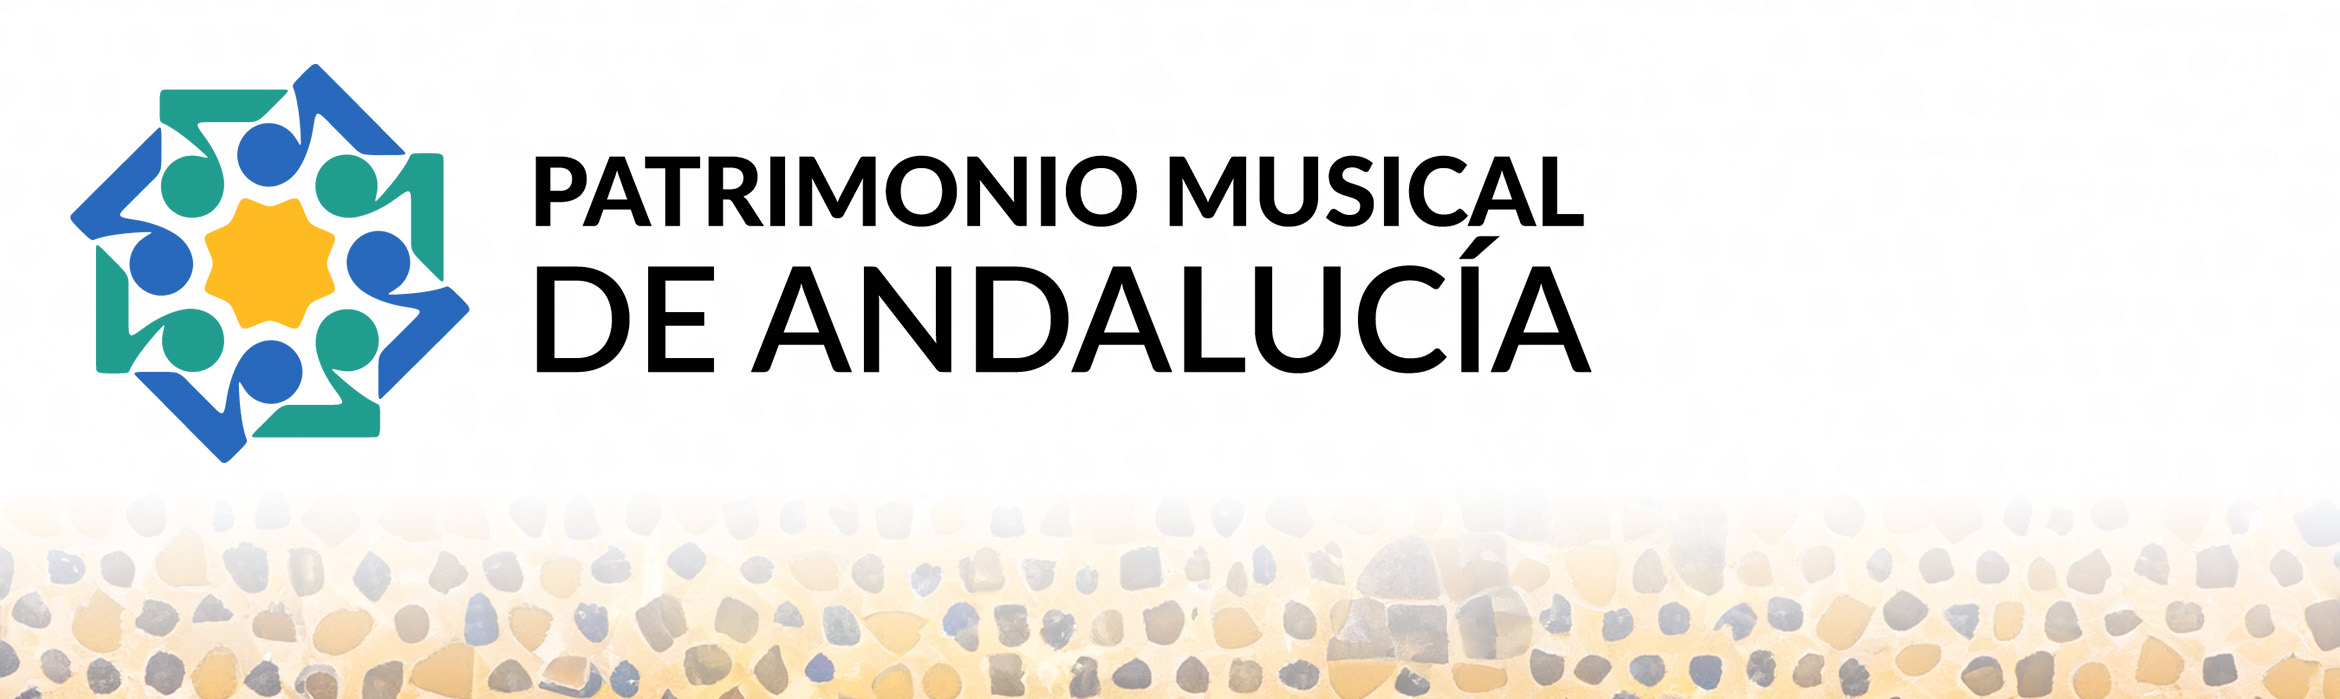 Patrimonio musical de Andalucía